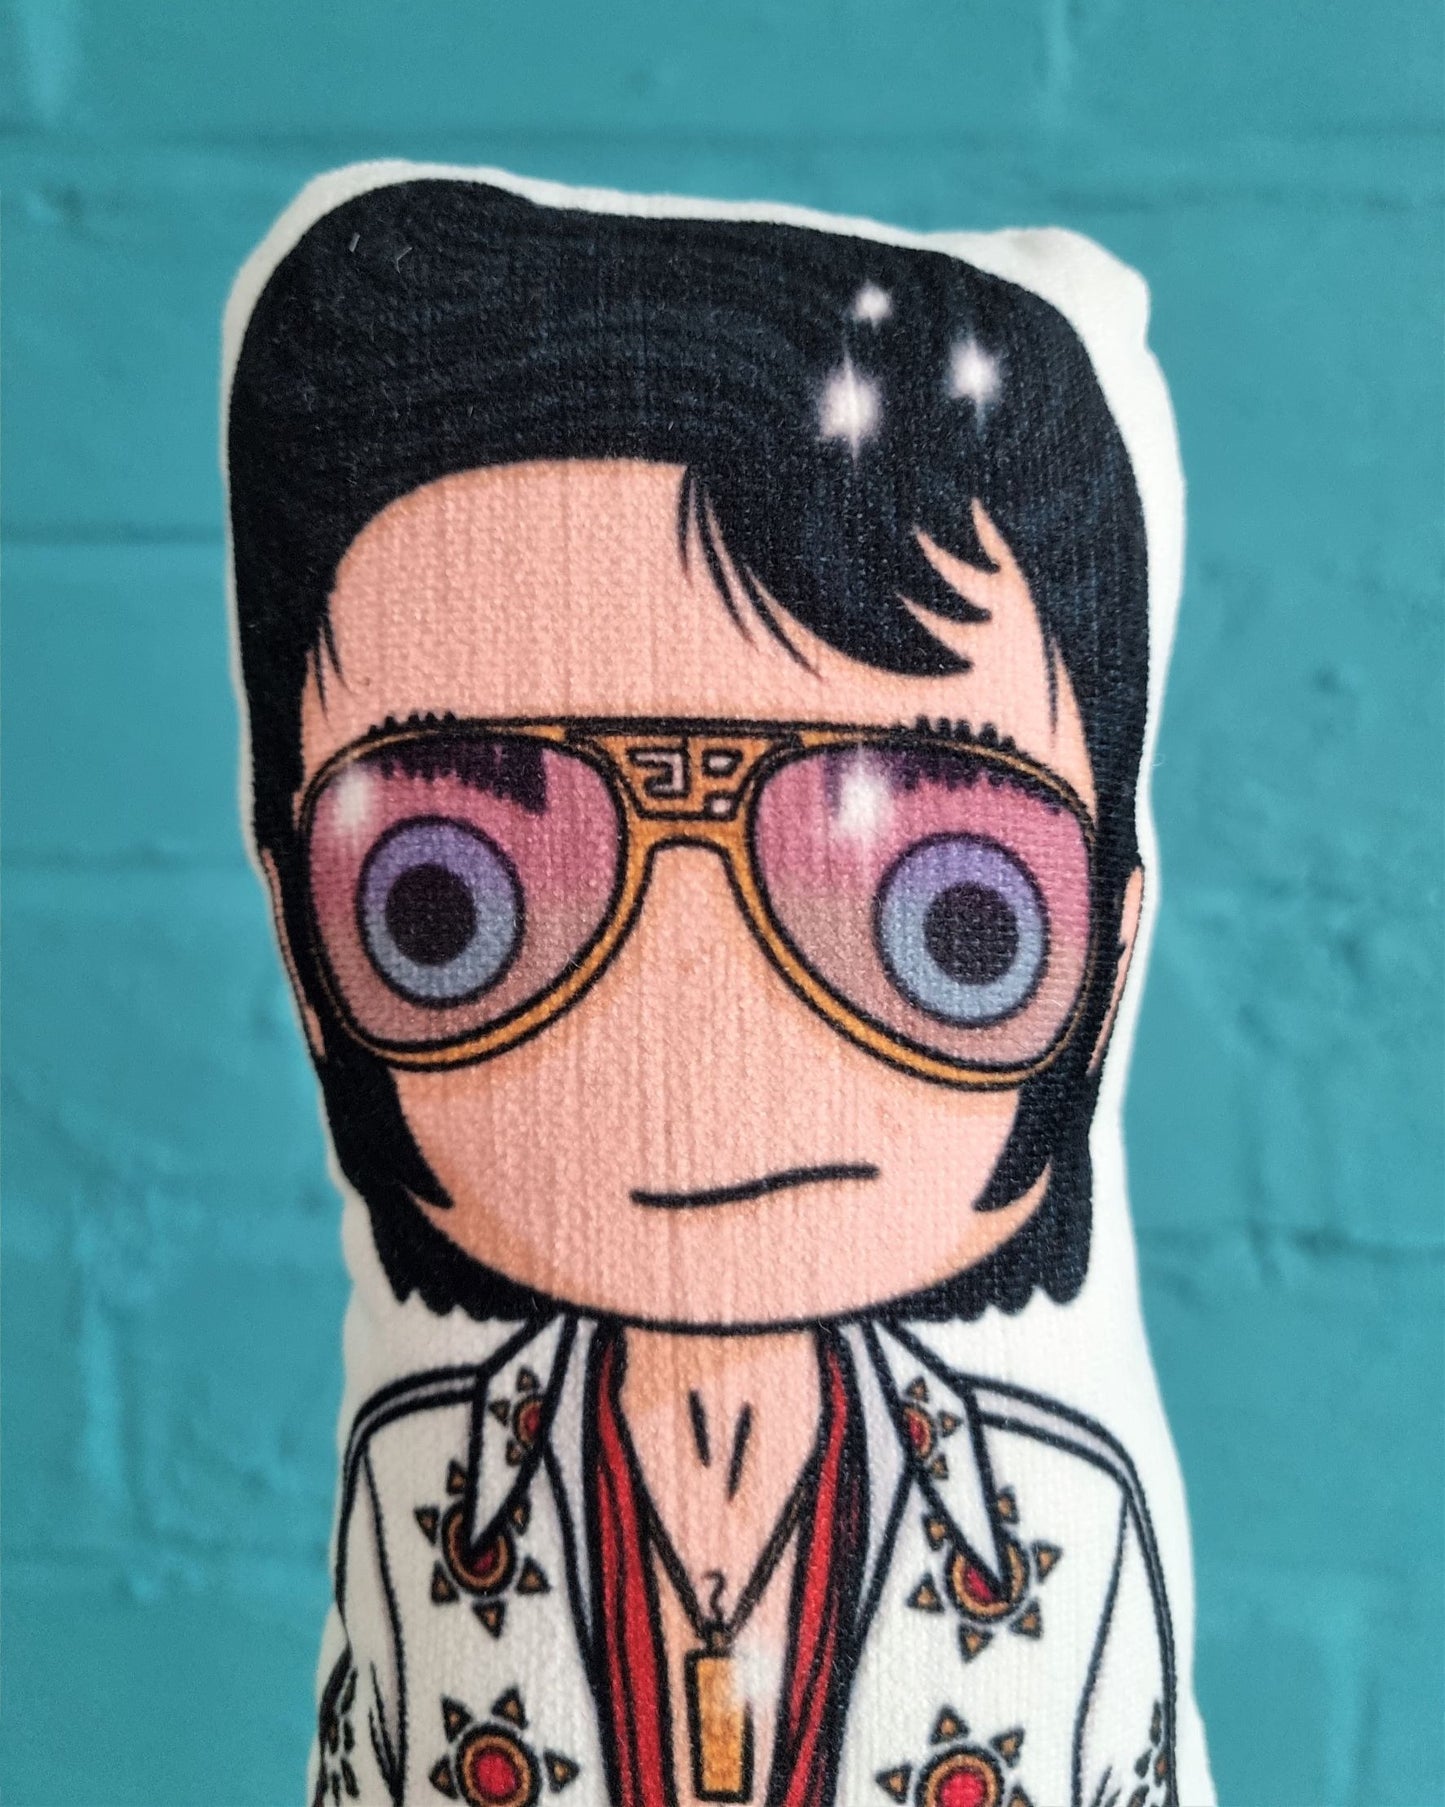 Elvis Presley Doll